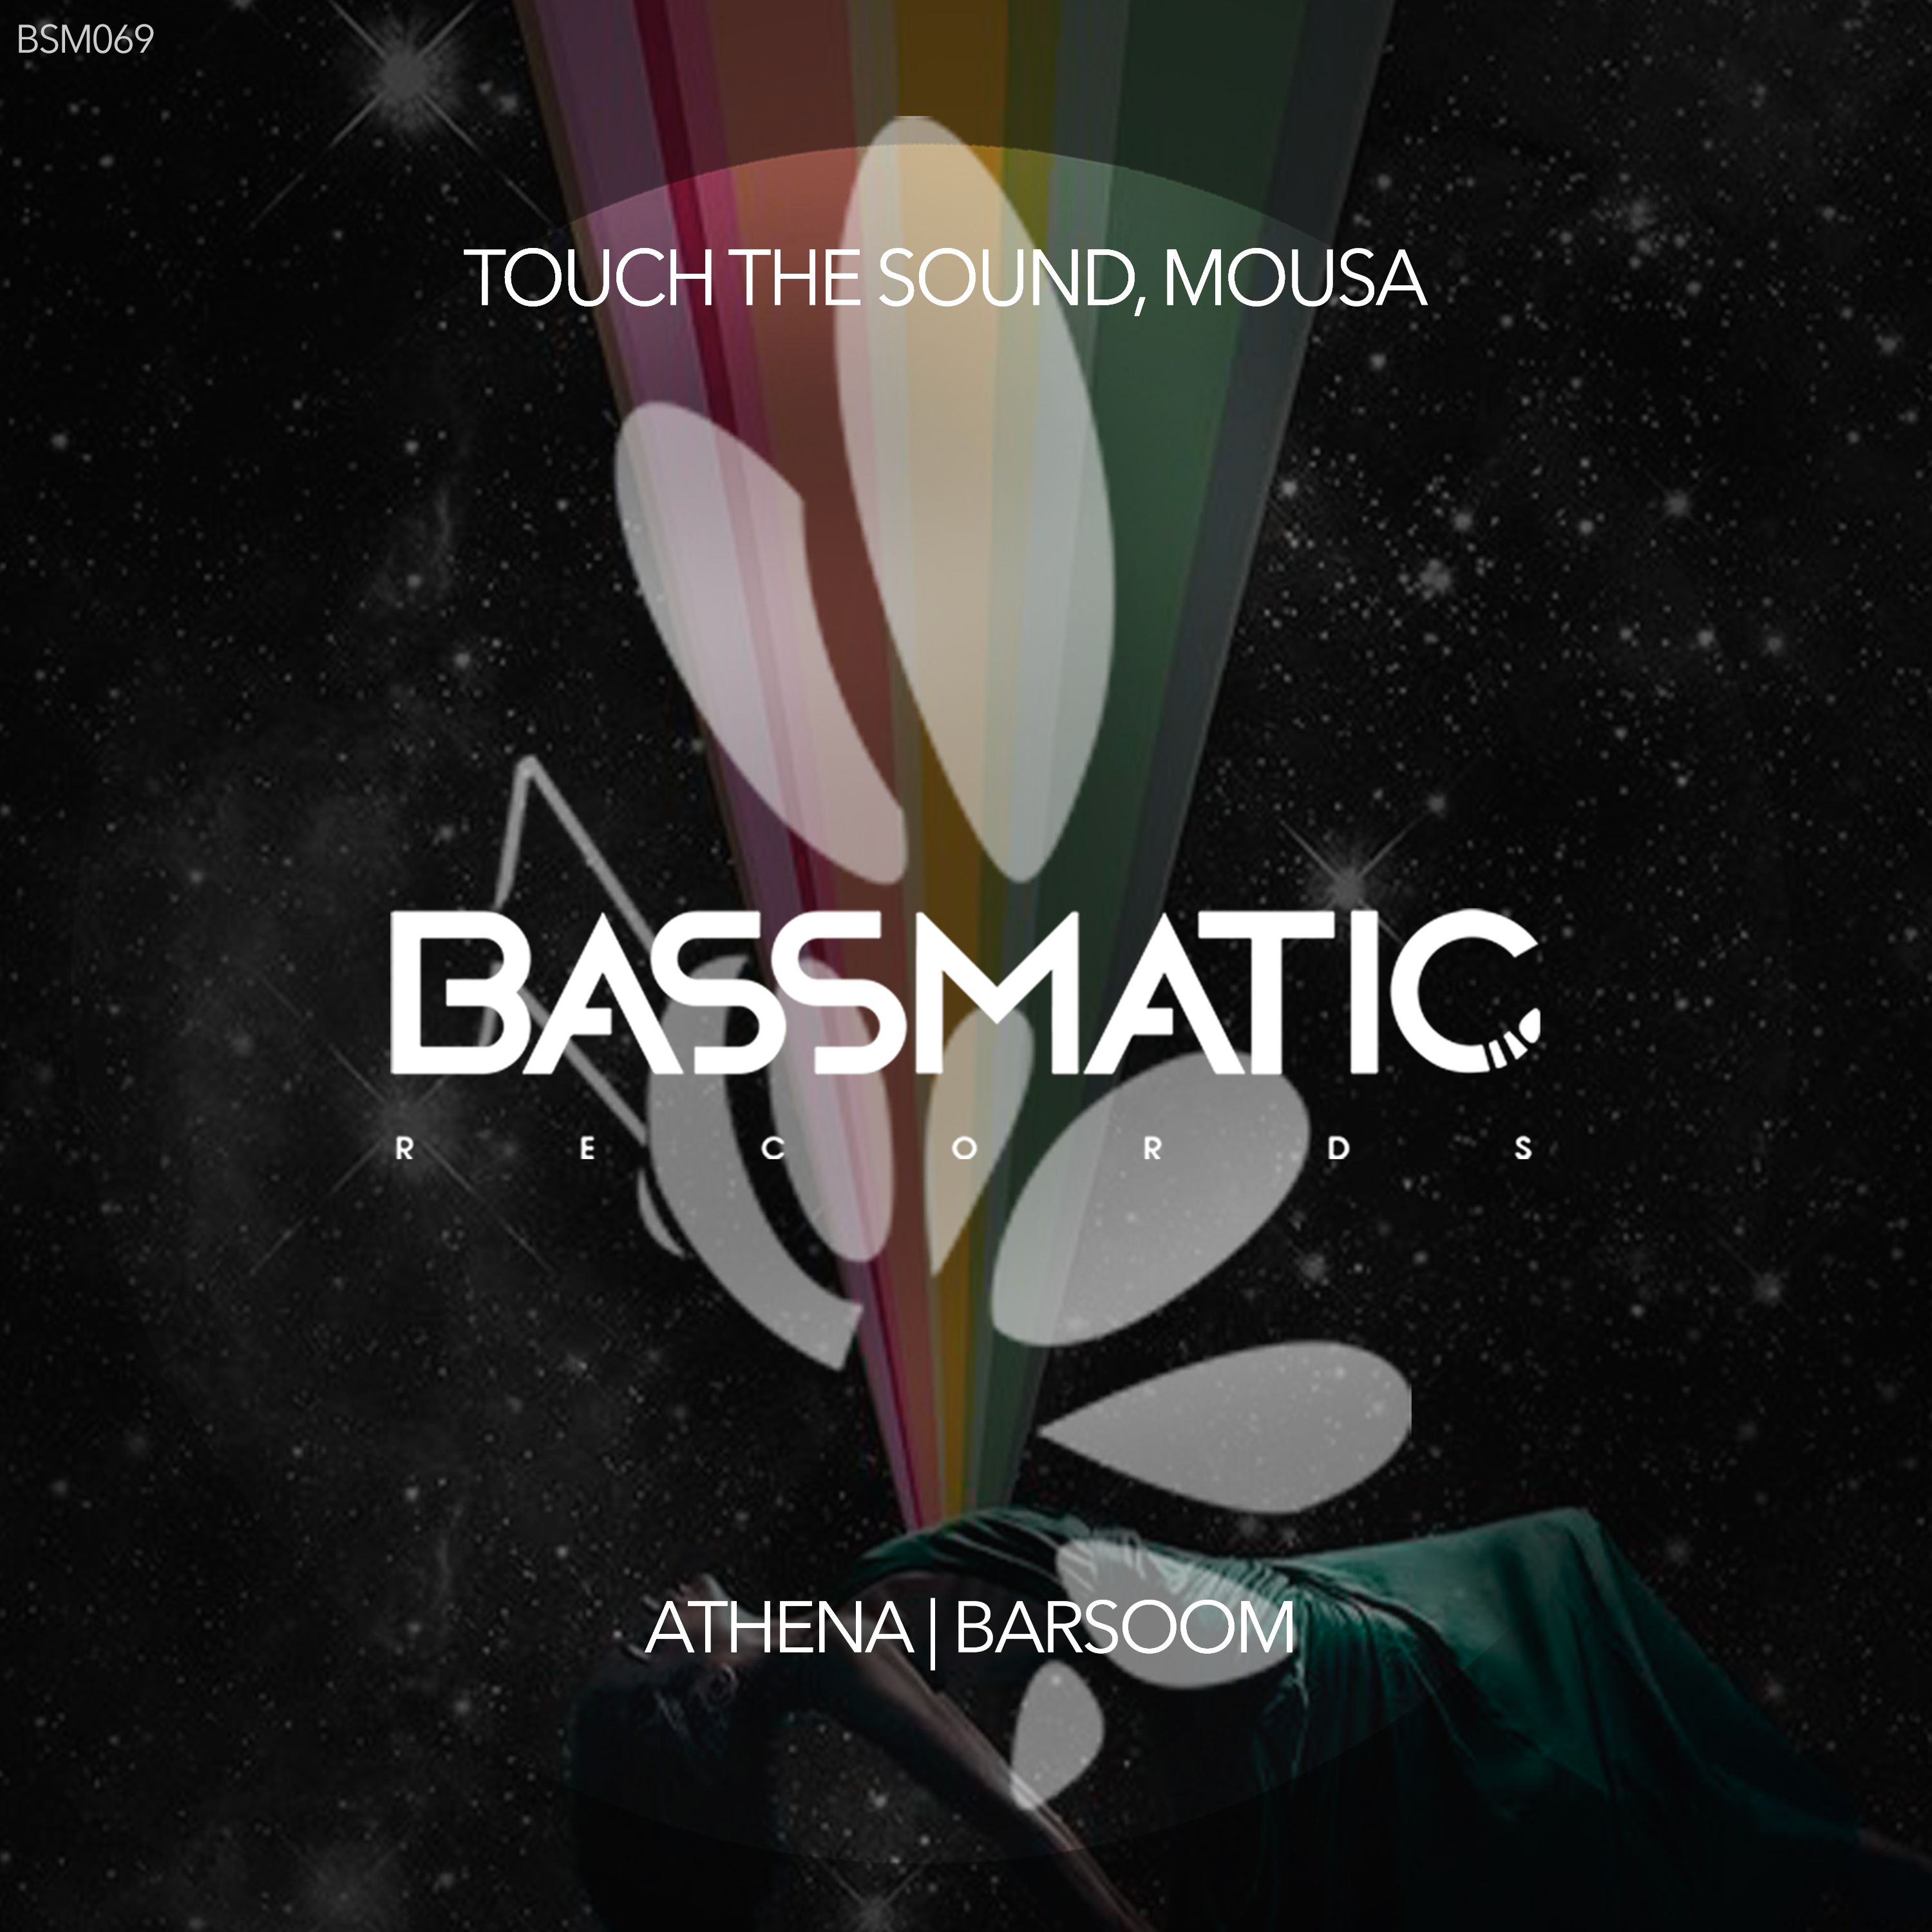 Pobierać Touch The Sound - Barsoom (Original Mix) | Bassmatic Records